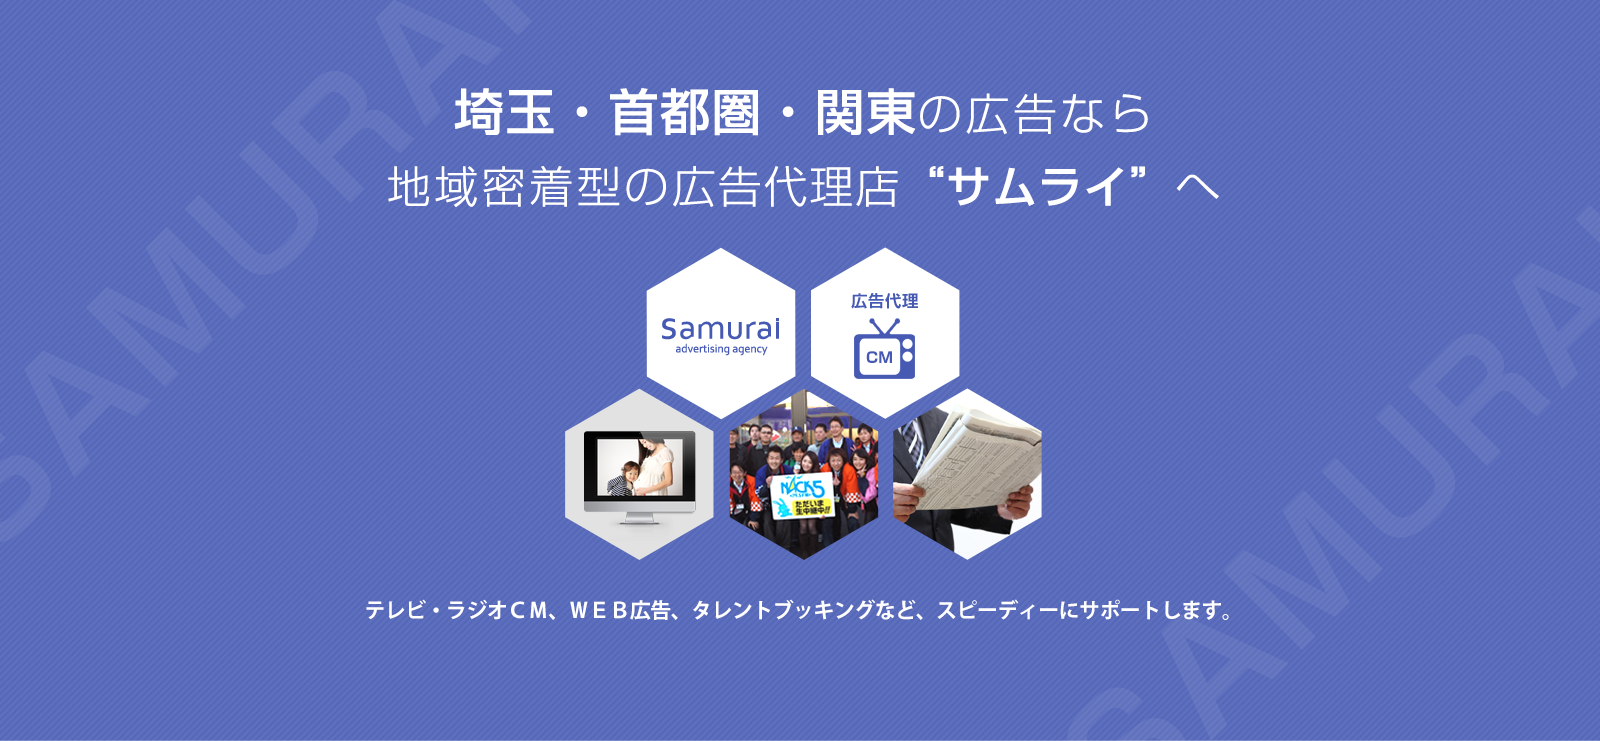 埼玉・首都圏・関東の広告なら地域密着型の広告代理店“サムライ”へテレビ・ラジオＣＭ、ＷＥＢ広告など、スピーディーにサポートします。